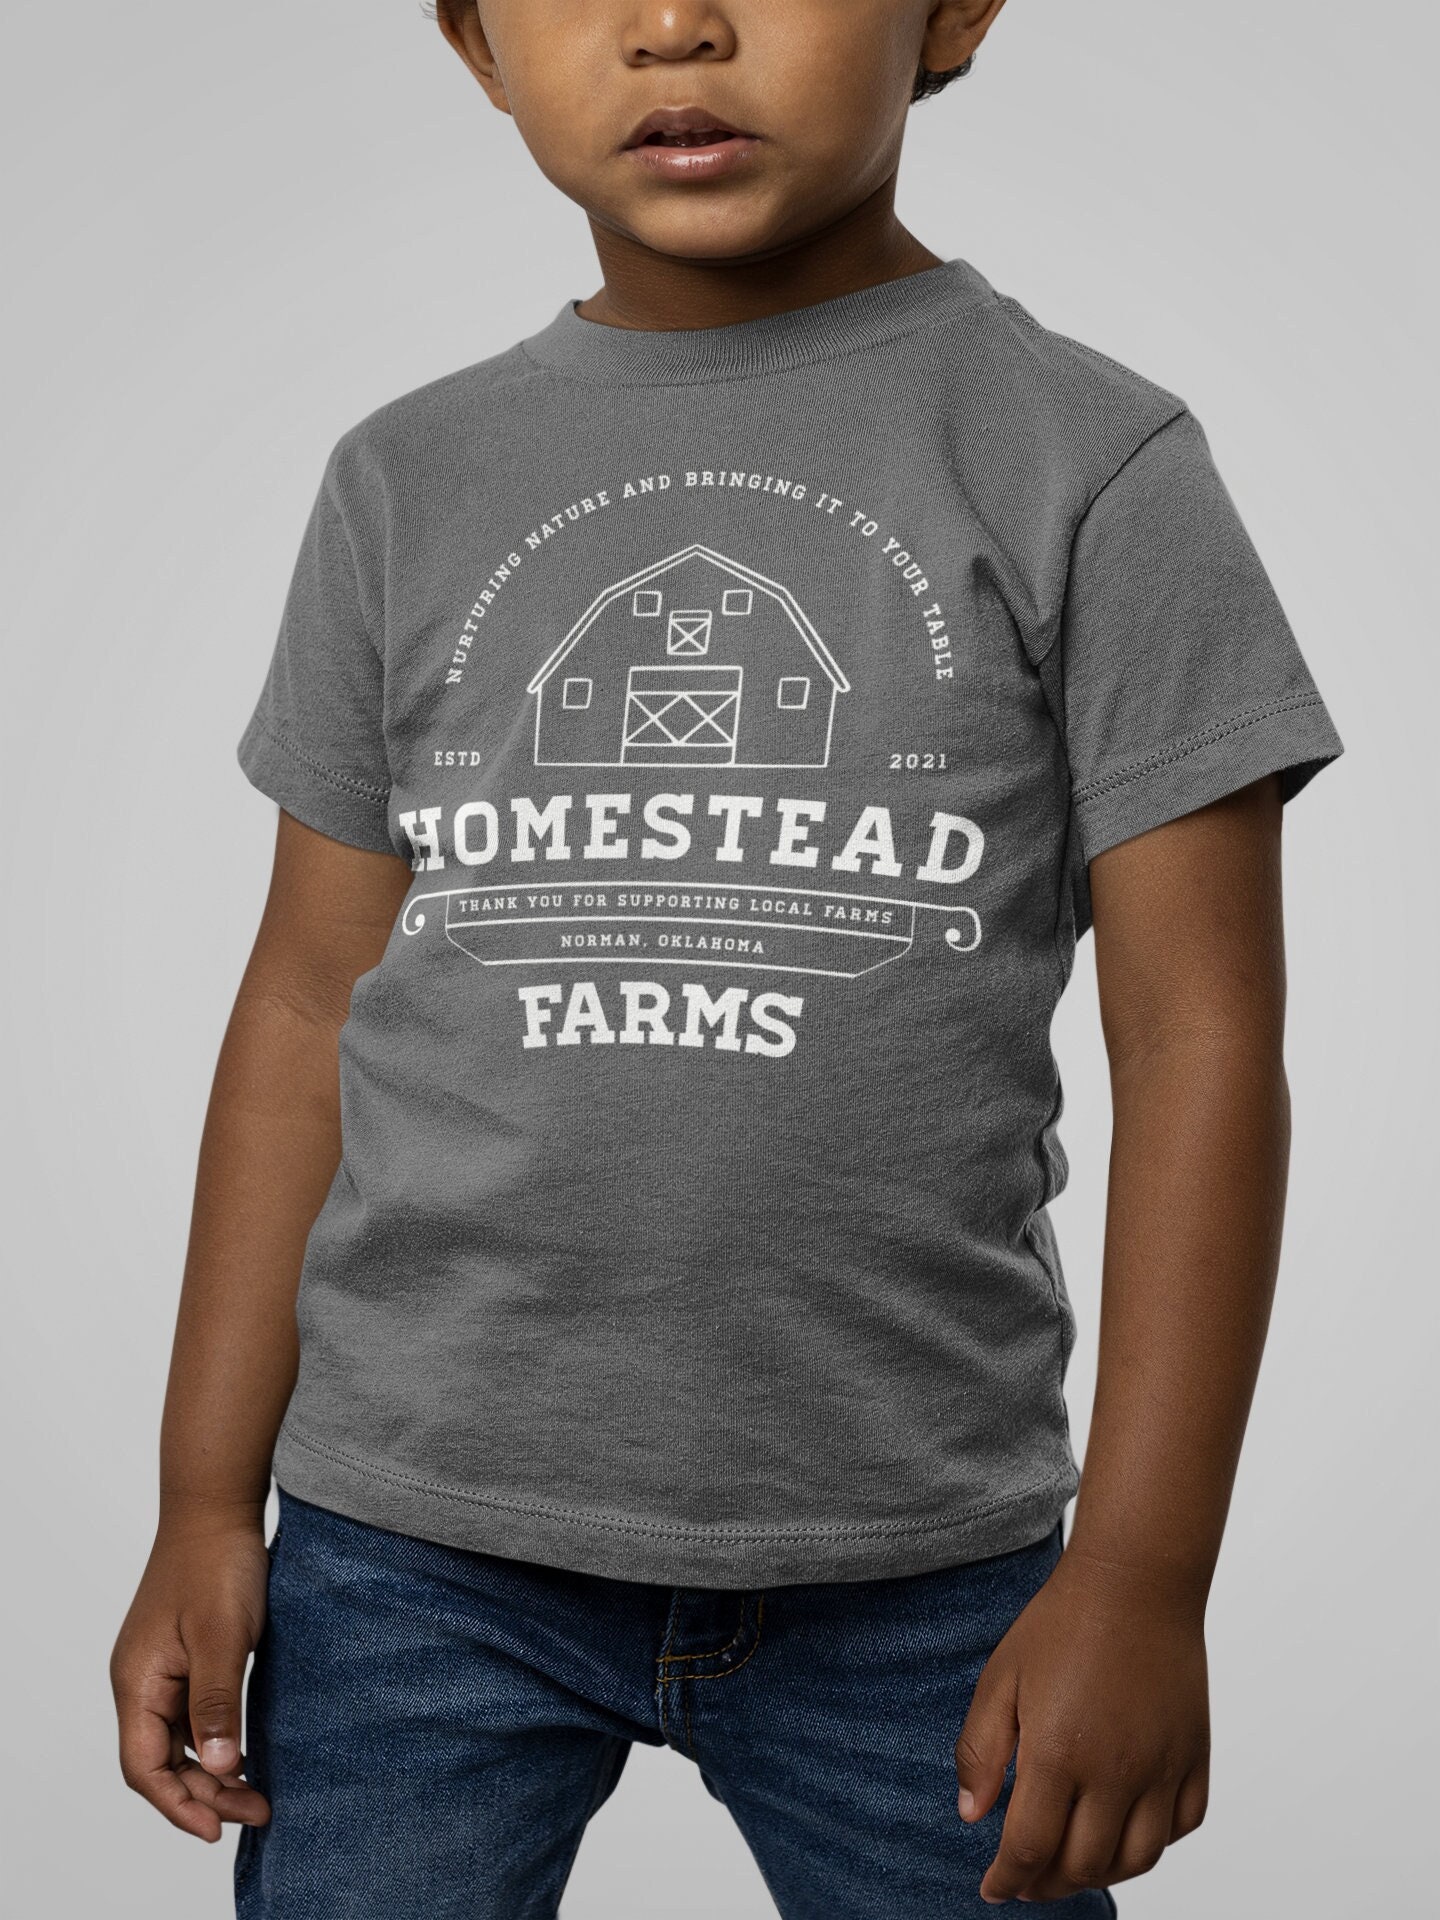 Kids Personalized Farm Tee Homestead Shirt Custom Farmer - Etsy Israel